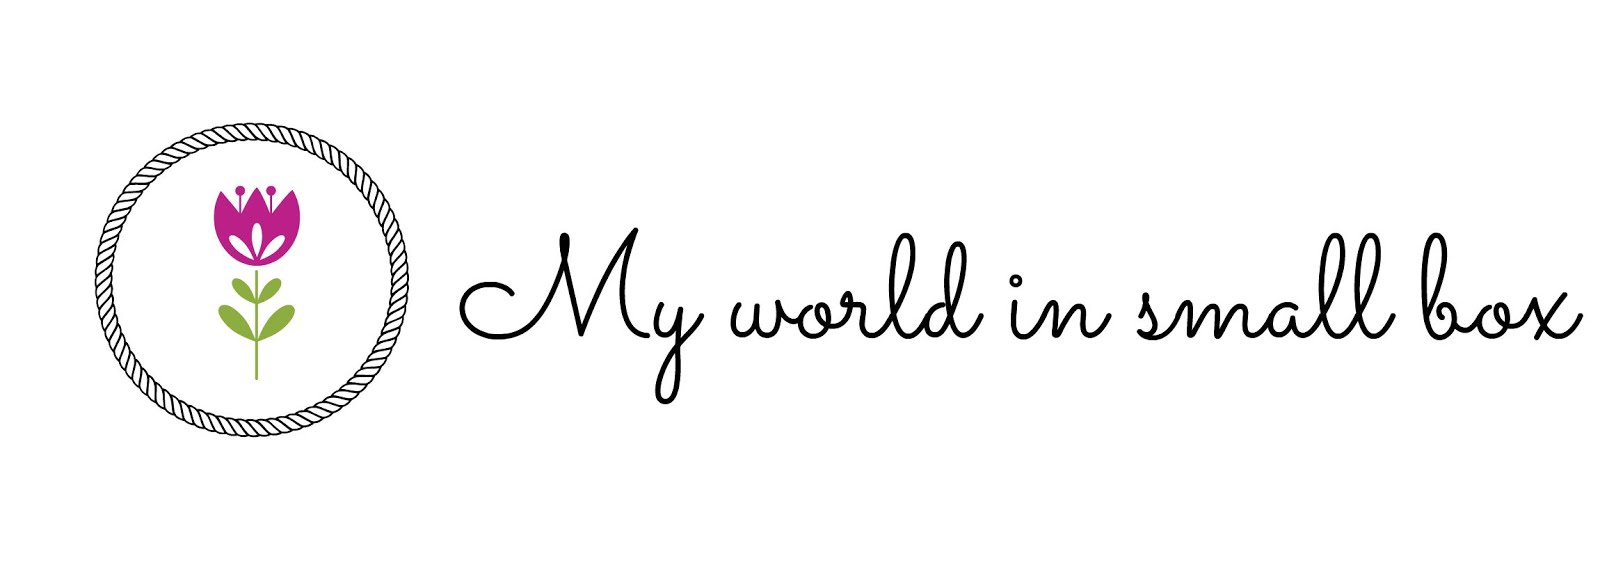 My world in small box:   DWA LATA   ♥